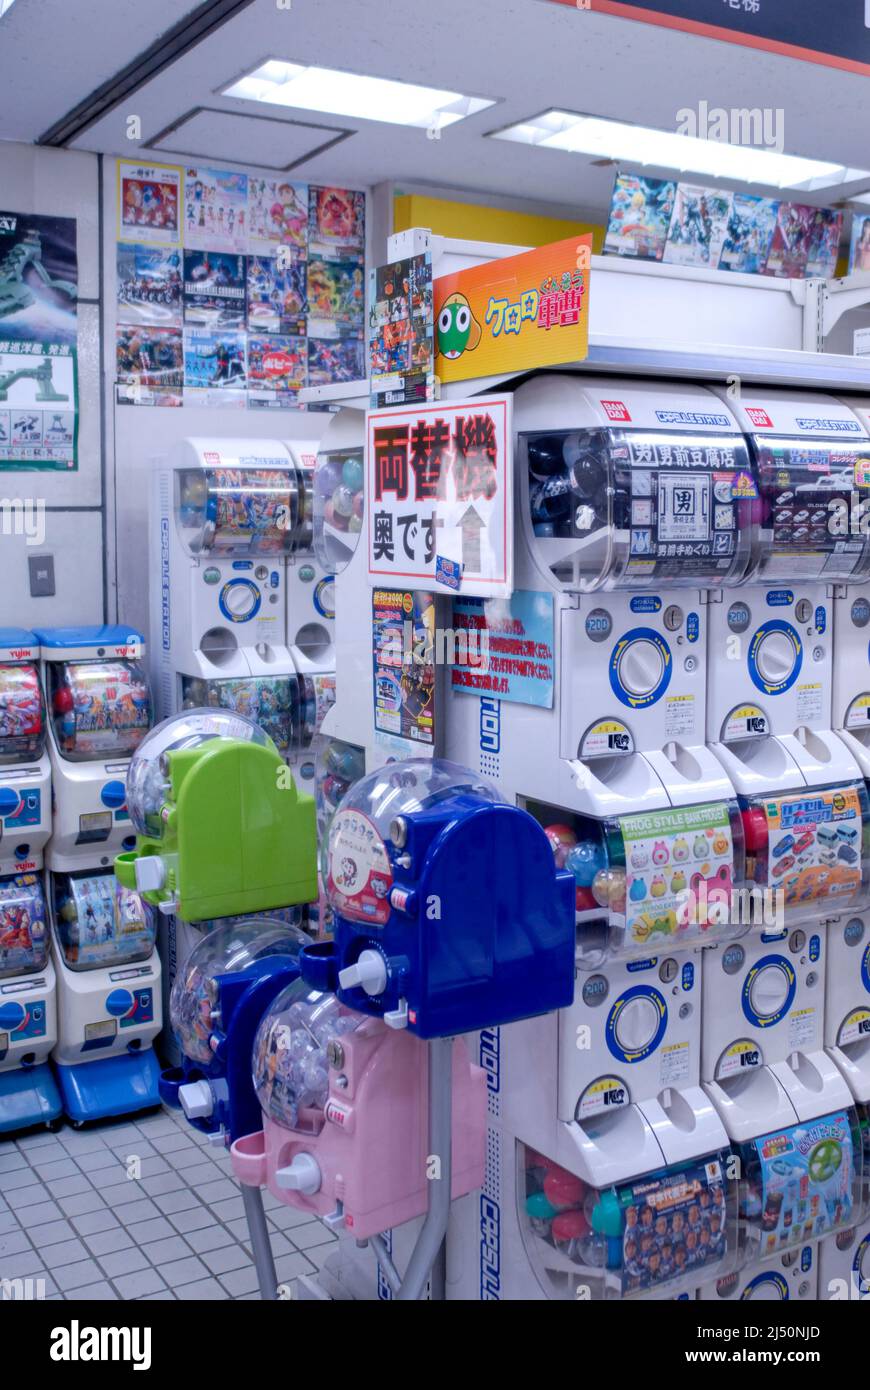 Une boutique constituée de distributeurs automatiques qui distribuent de petits jouets dans le centre de remise électronique de Tokyo. Banque D'Images